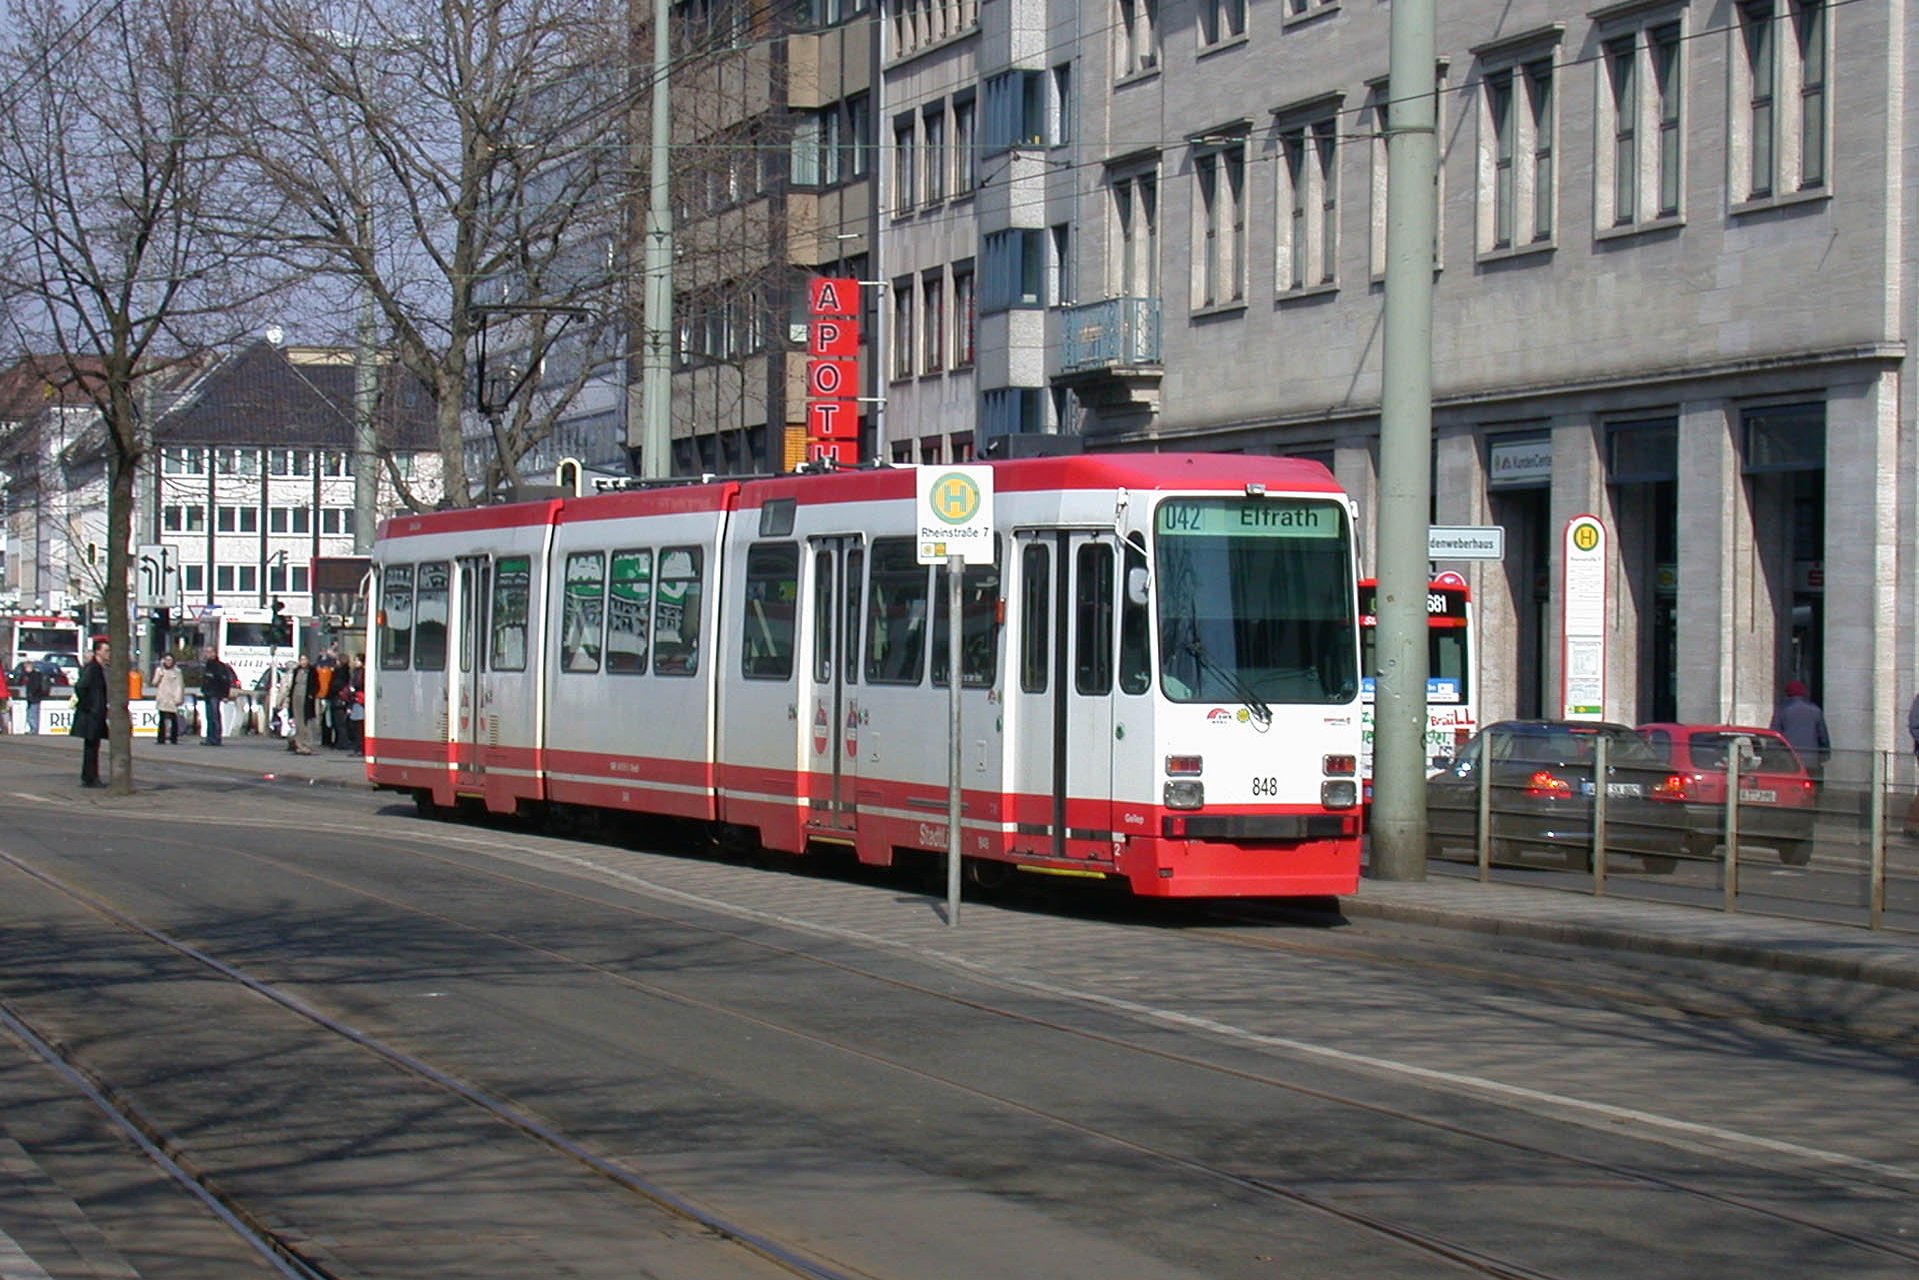 M8C 848 Die M8C kommen auf den Linien 042 und 043 zum Einsatz. Trams of type M8C are in service on lines 042 and 043.